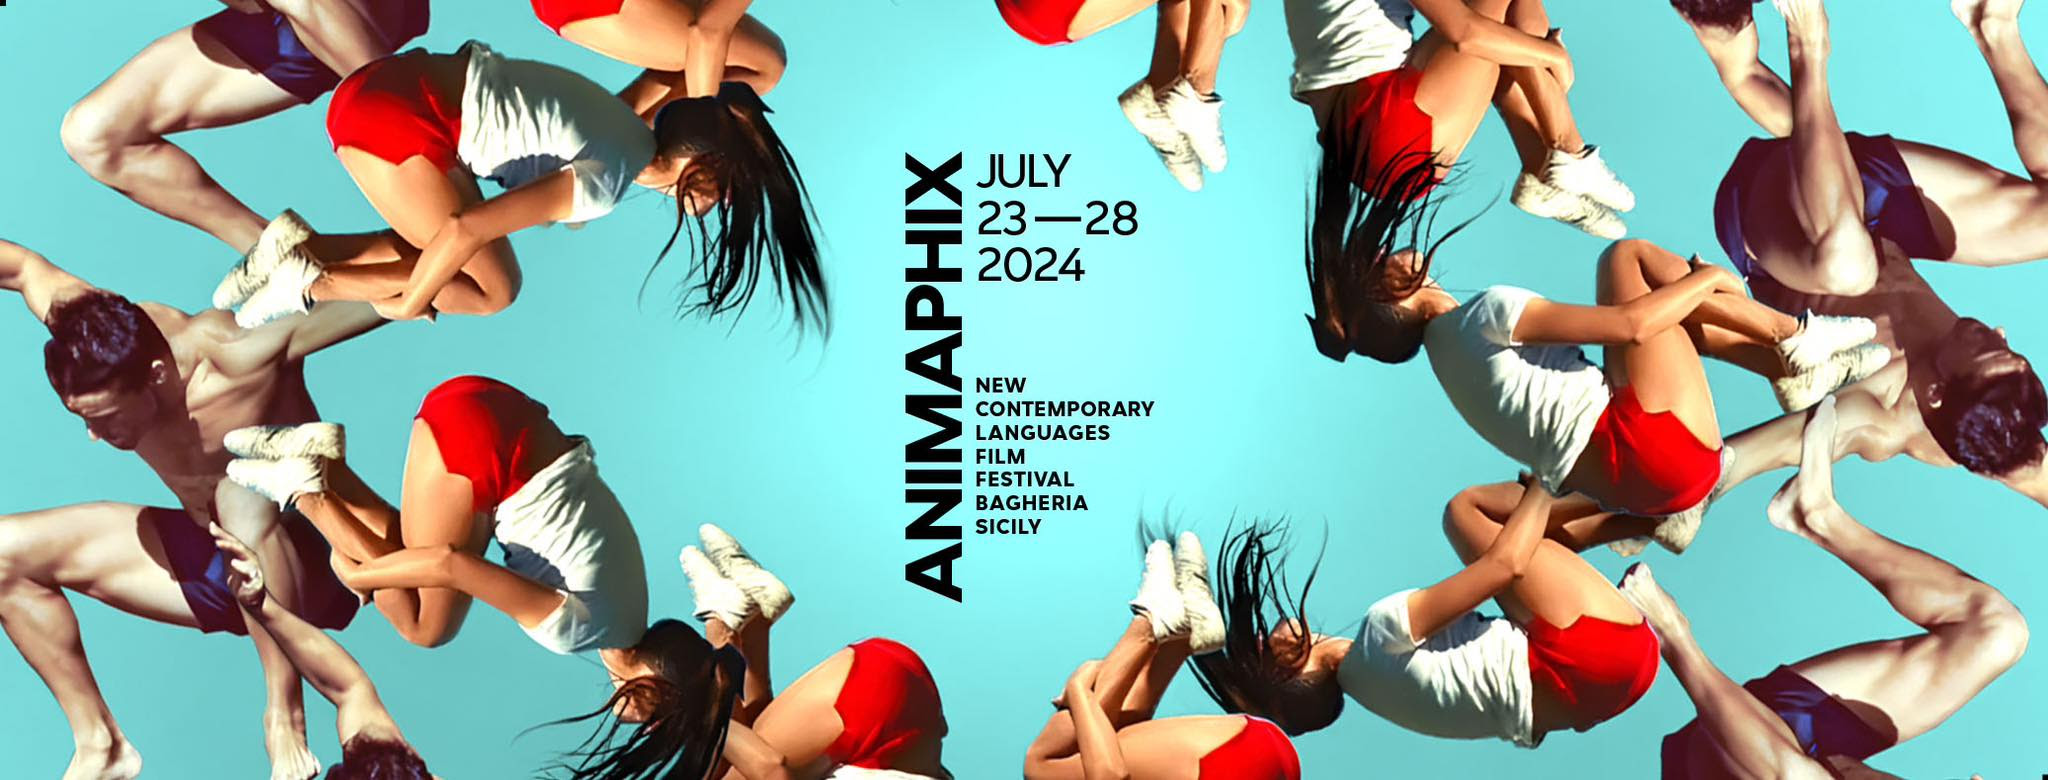  Al via lunedì 22 luglio la 10a edizione di Animaphix.  Nuovi Linguaggi Contemporanei Film Festival.